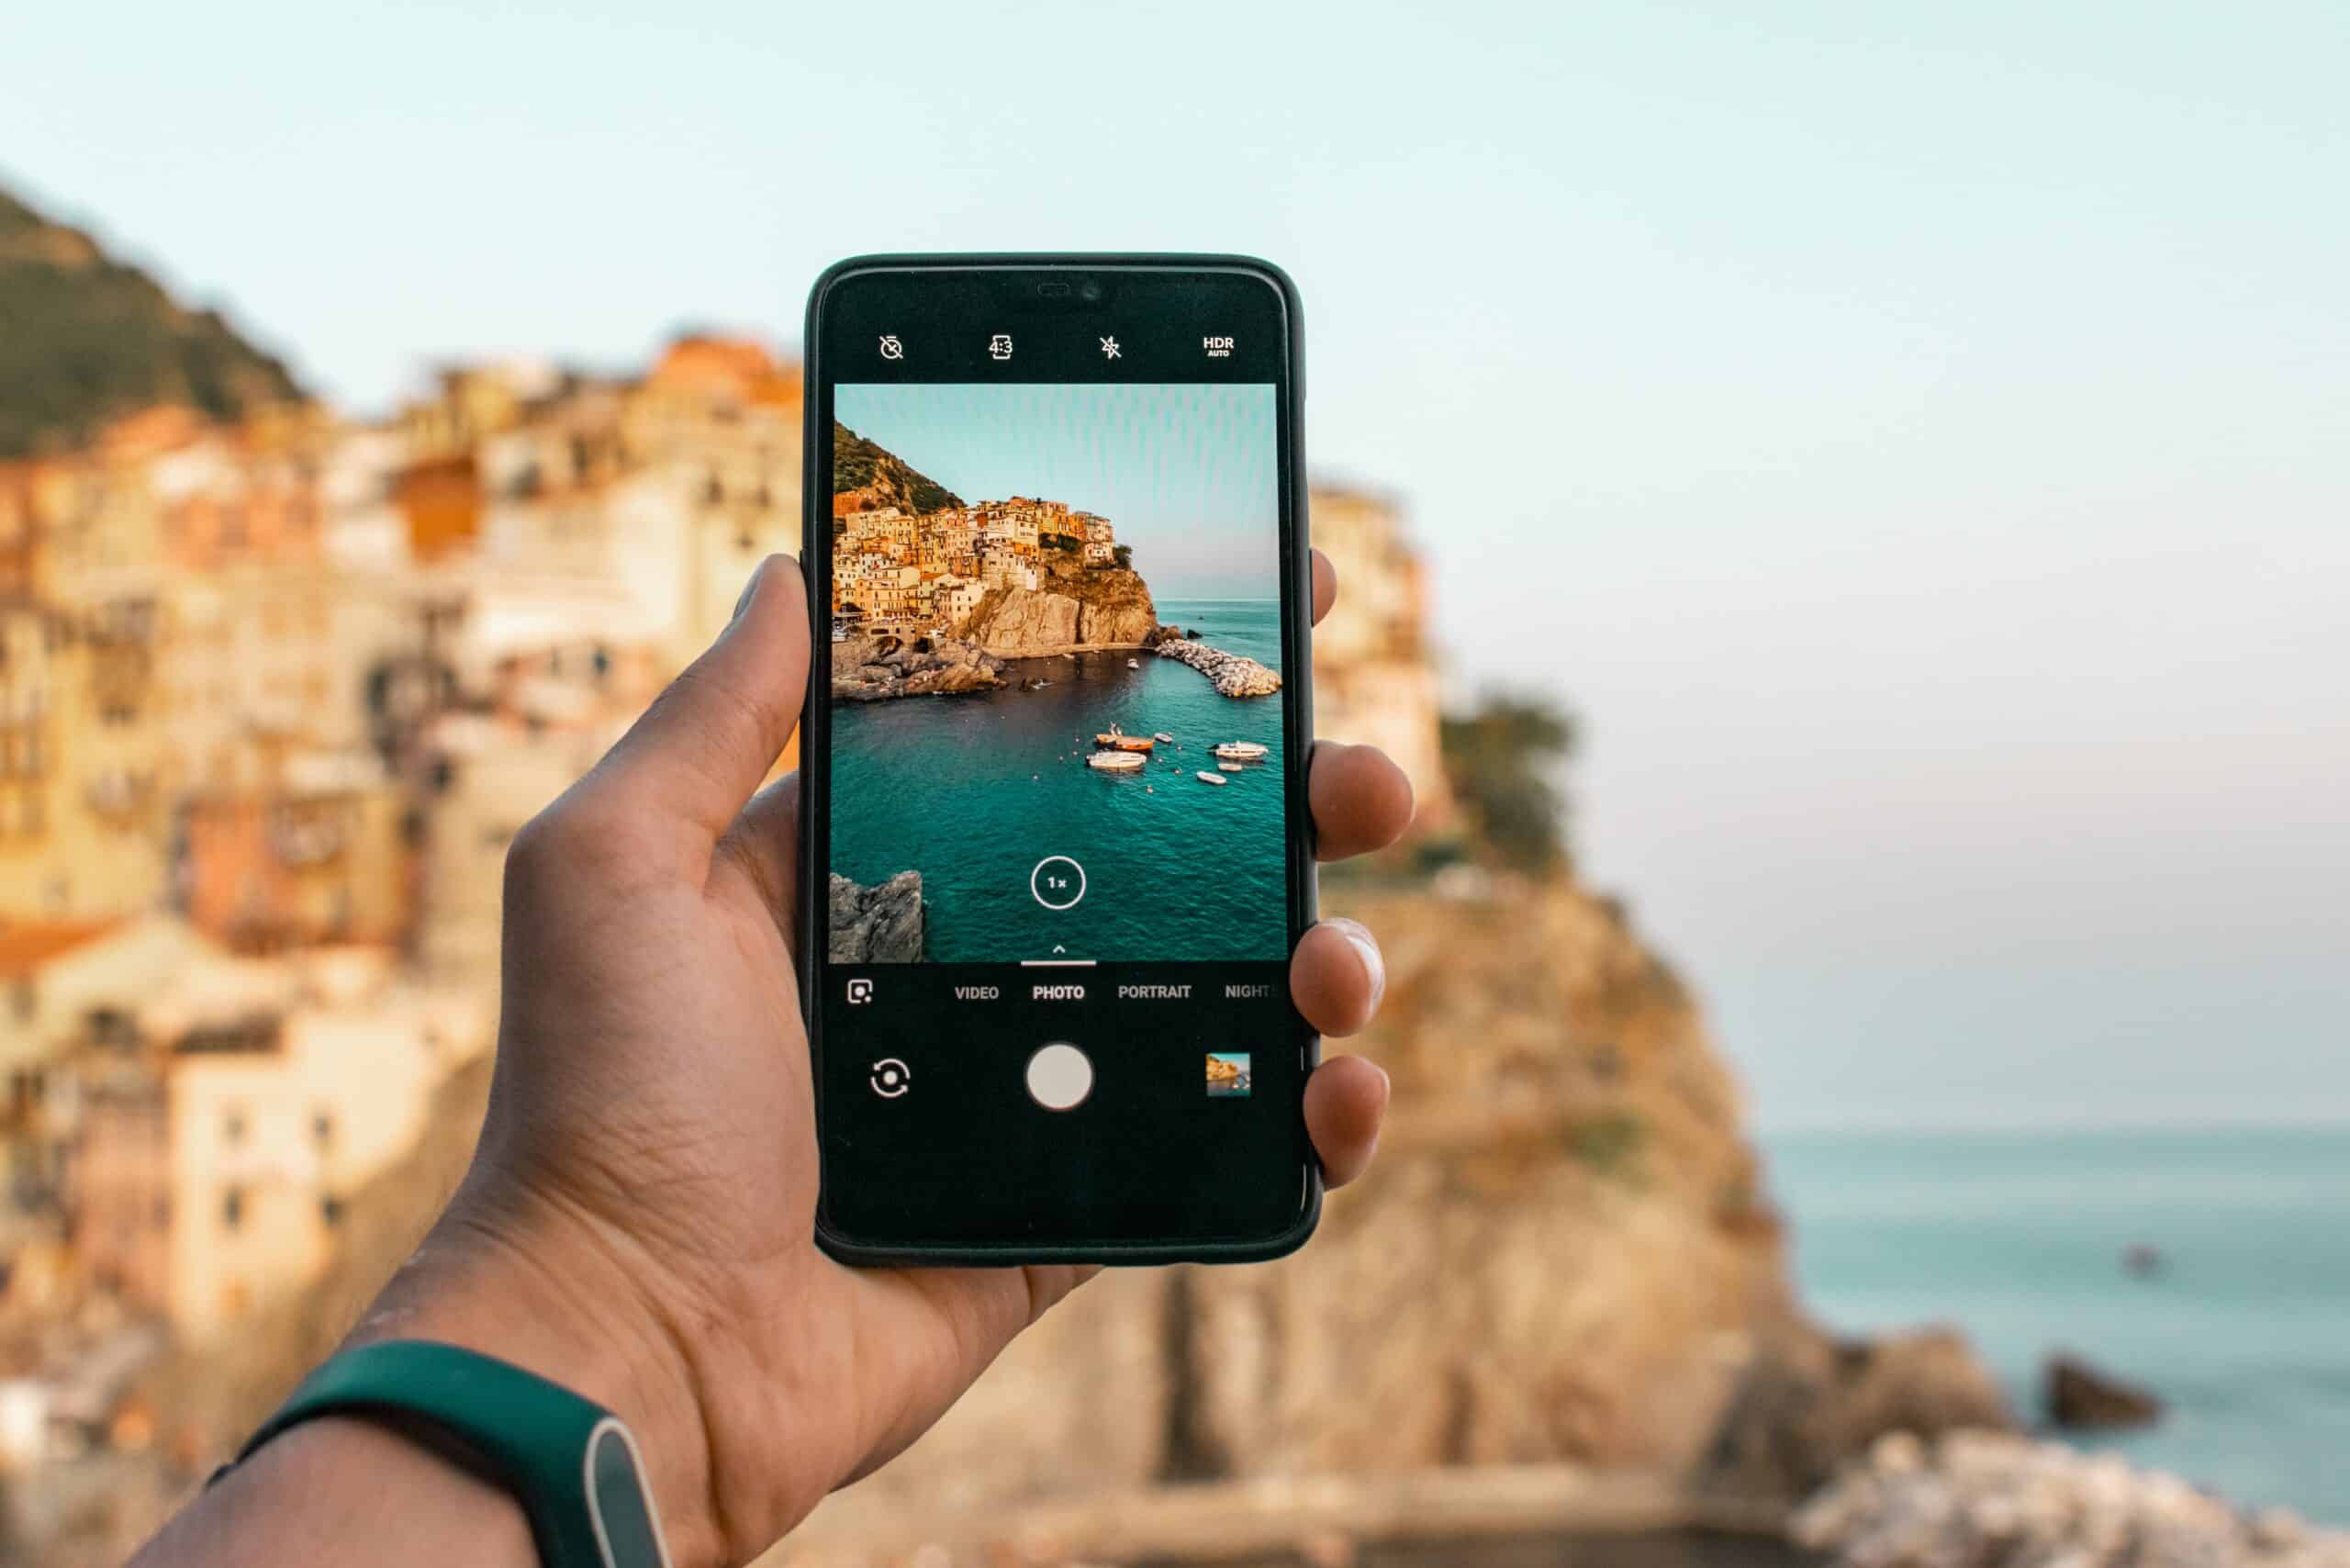 mão masculina segurando um aparelho iphone para tirar a foto de uma encosta italiana, mostrando as casas e os barcos na água azul, ao fim de tarde com a luz do sol refletindo na vila